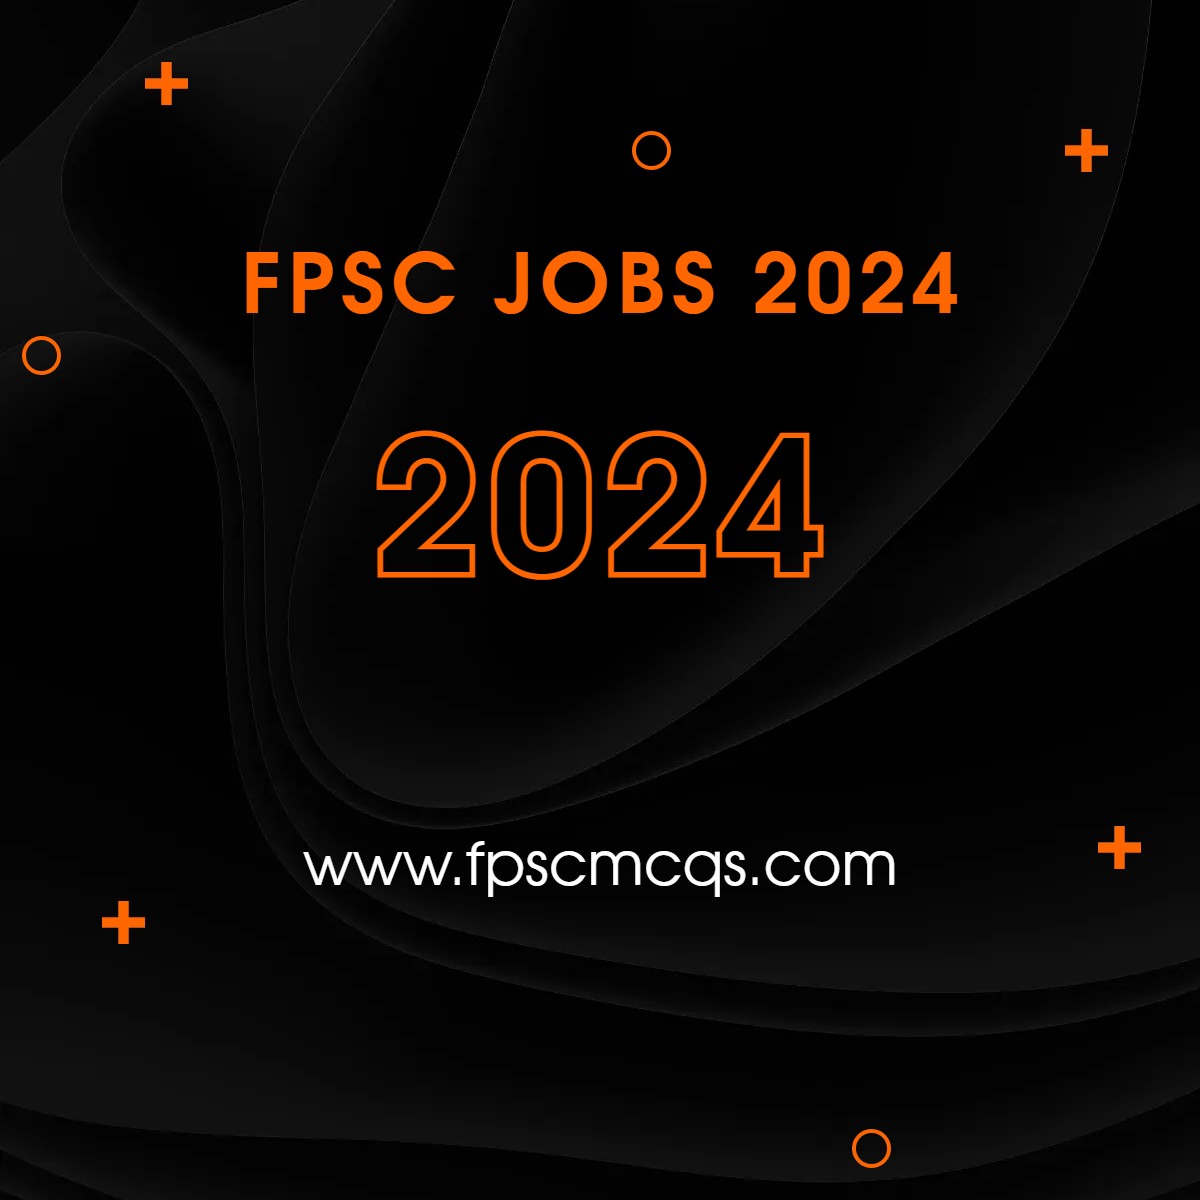 FPSC JOBS 2024